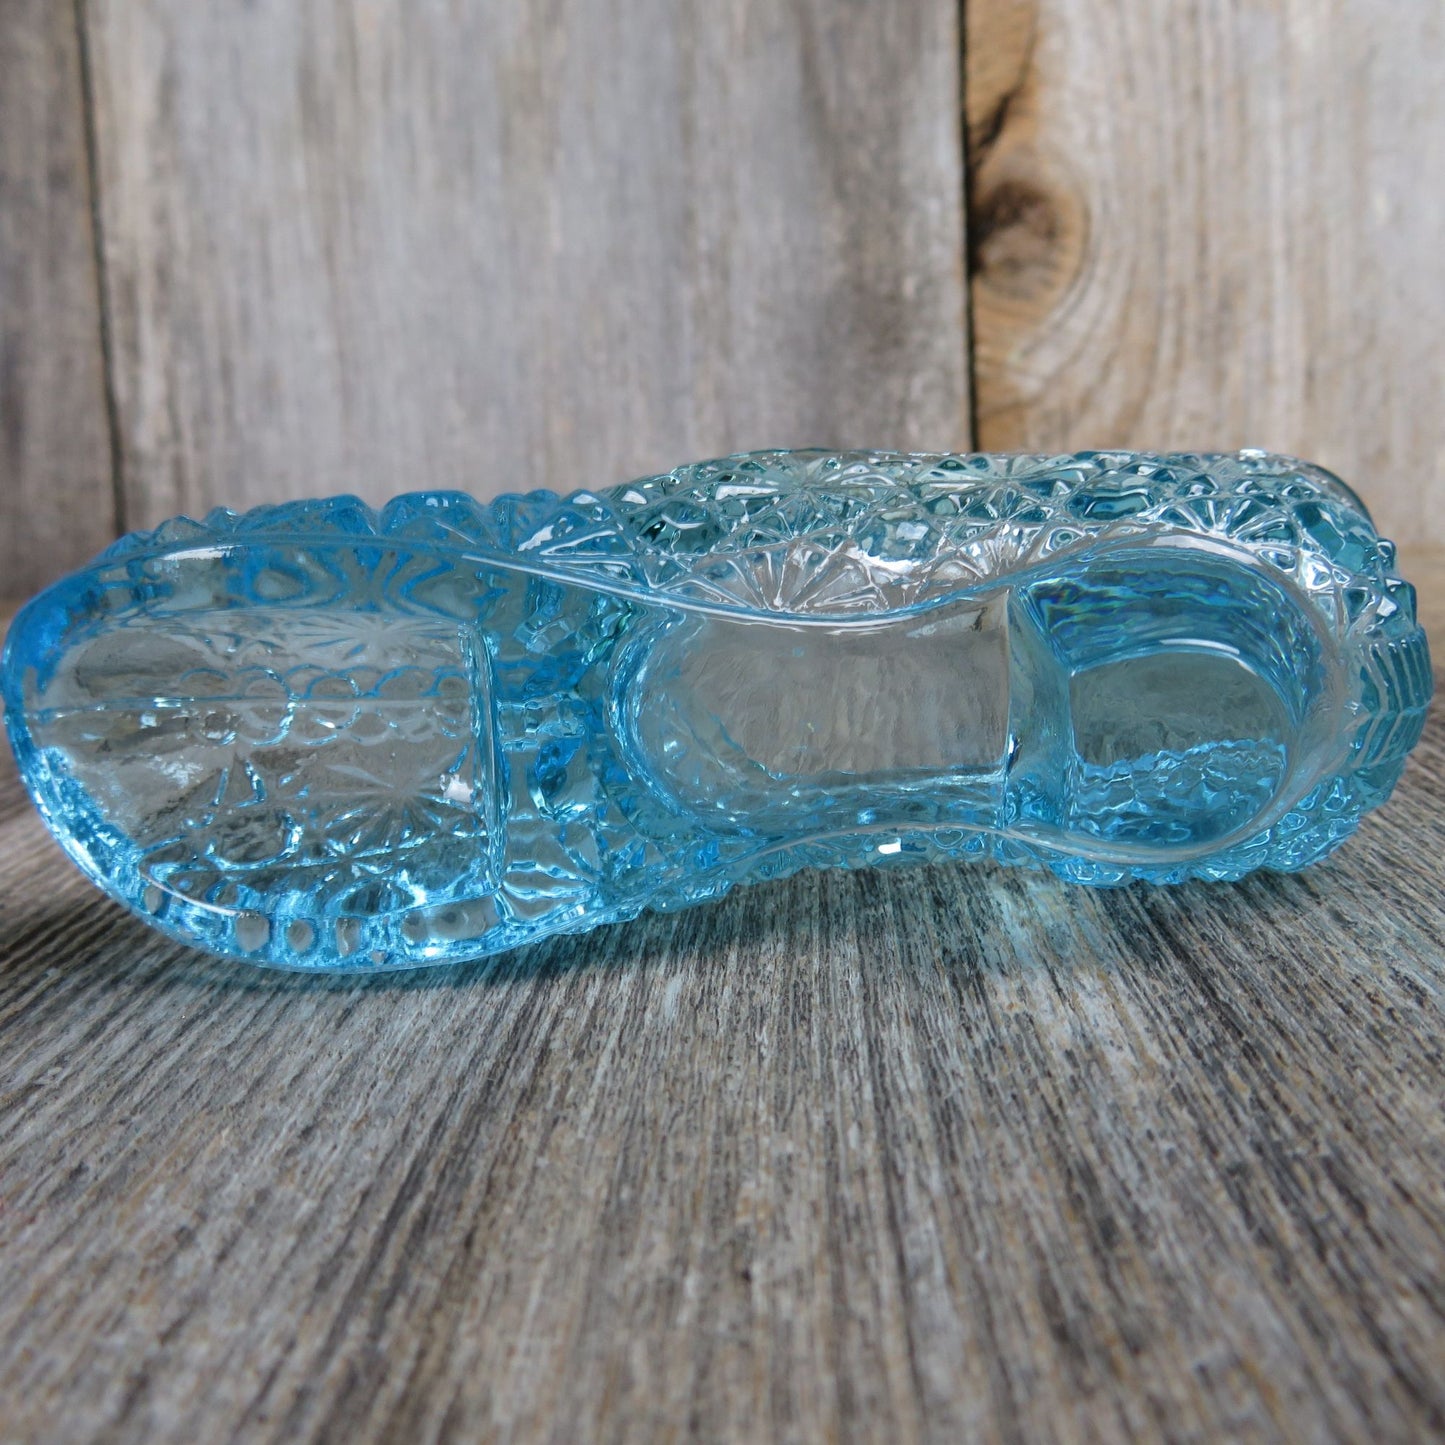 Vintage Blue Glass Slipper Vase Figurine Shoe Shaped Starburst Embossed Teal Colored Dish